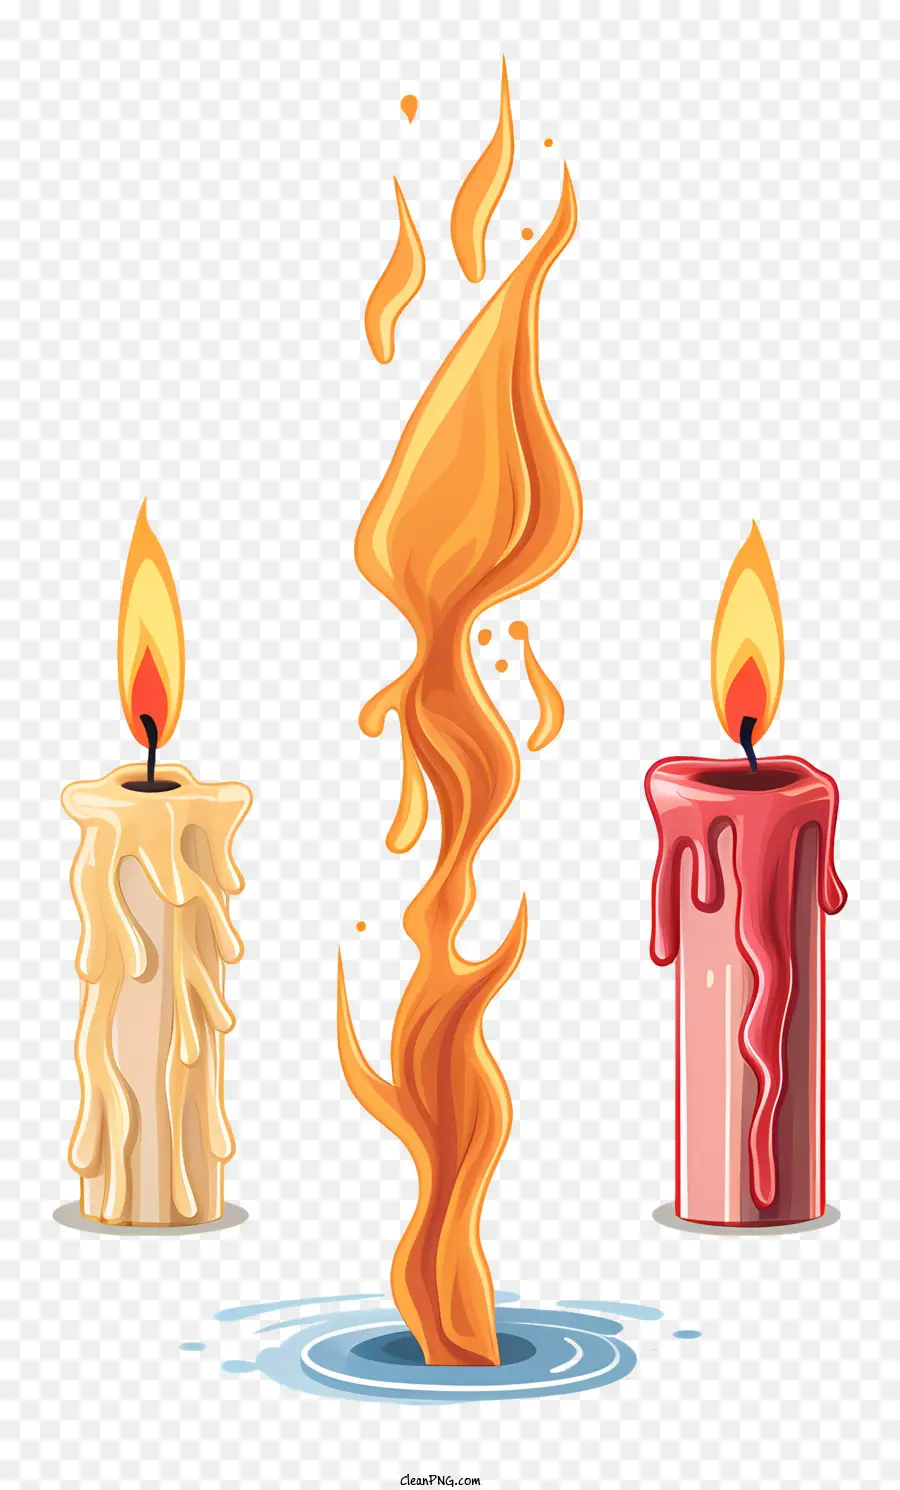 Kerzen brennen Kerzen farbenfrohe Kerzen Zündete Kerzenflamme - Bunte brennende Kerzen erzeugen ein warmes und angenehmes Ambiente